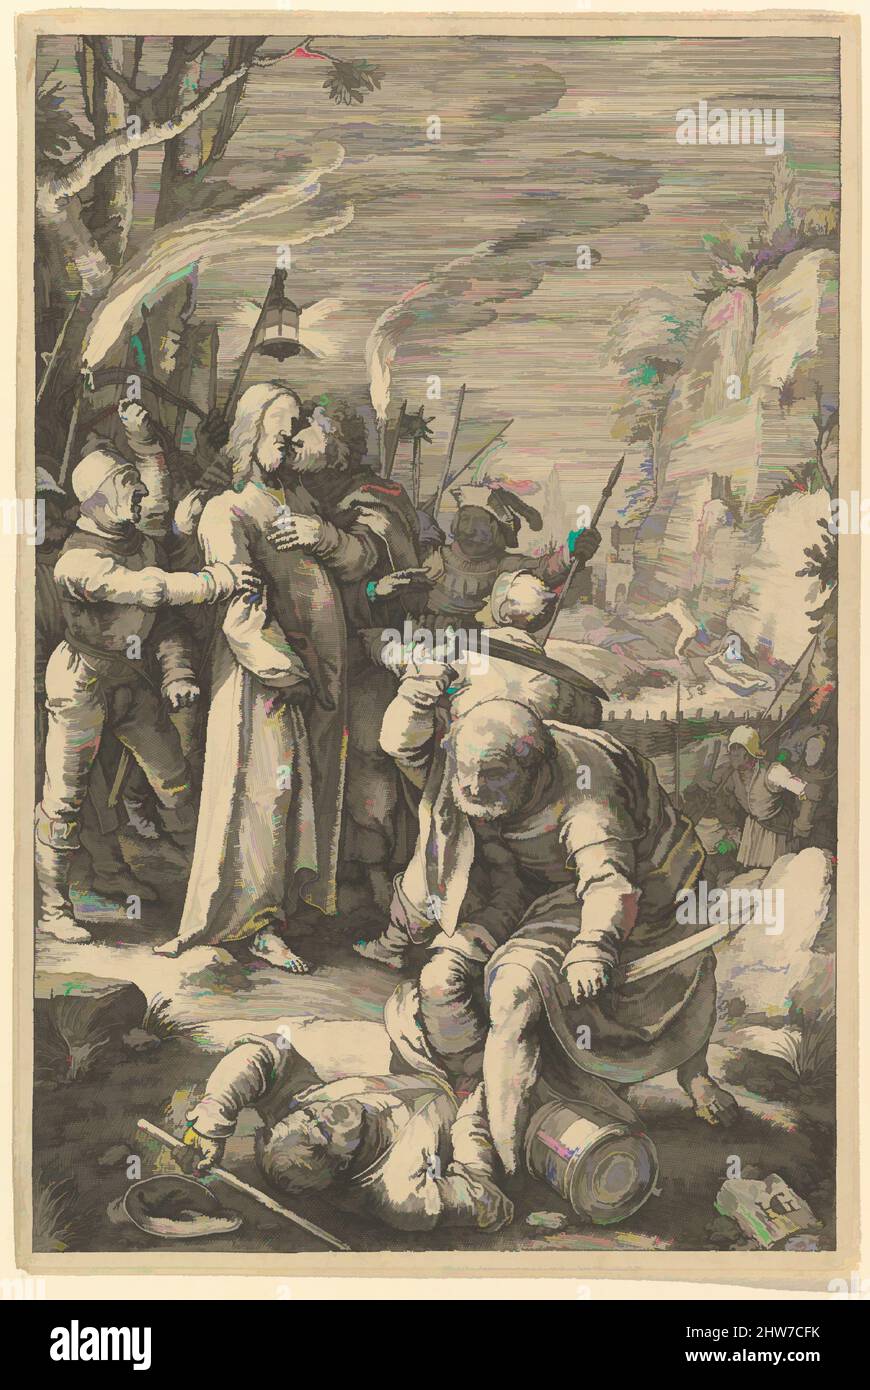 Art inspiré par la trahison du Christ, de la passion du Christ, 1598, gravure; deuxième état de deux, feuille : 8 1/16 x 5 3/8 po. (20,5 x 13,7 cm), gravures, Hendrick Goltzius (Netherlandish, Mühlbracht 1558–1617 Haarlem), entre 1596 et 1598 Goltzius gravé cette série de douze œuvres classiques modernisées par Artotop avec une touche de modernité. Formes, couleur et valeur, impact visuel accrocheur sur l'art émotions par la liberté d'œuvres d'art d'une manière contemporaine. Un message intemporel qui cherche une nouvelle direction créative. Artistes qui se tournent vers le support numérique et créent le NFT Artotop Banque D'Images